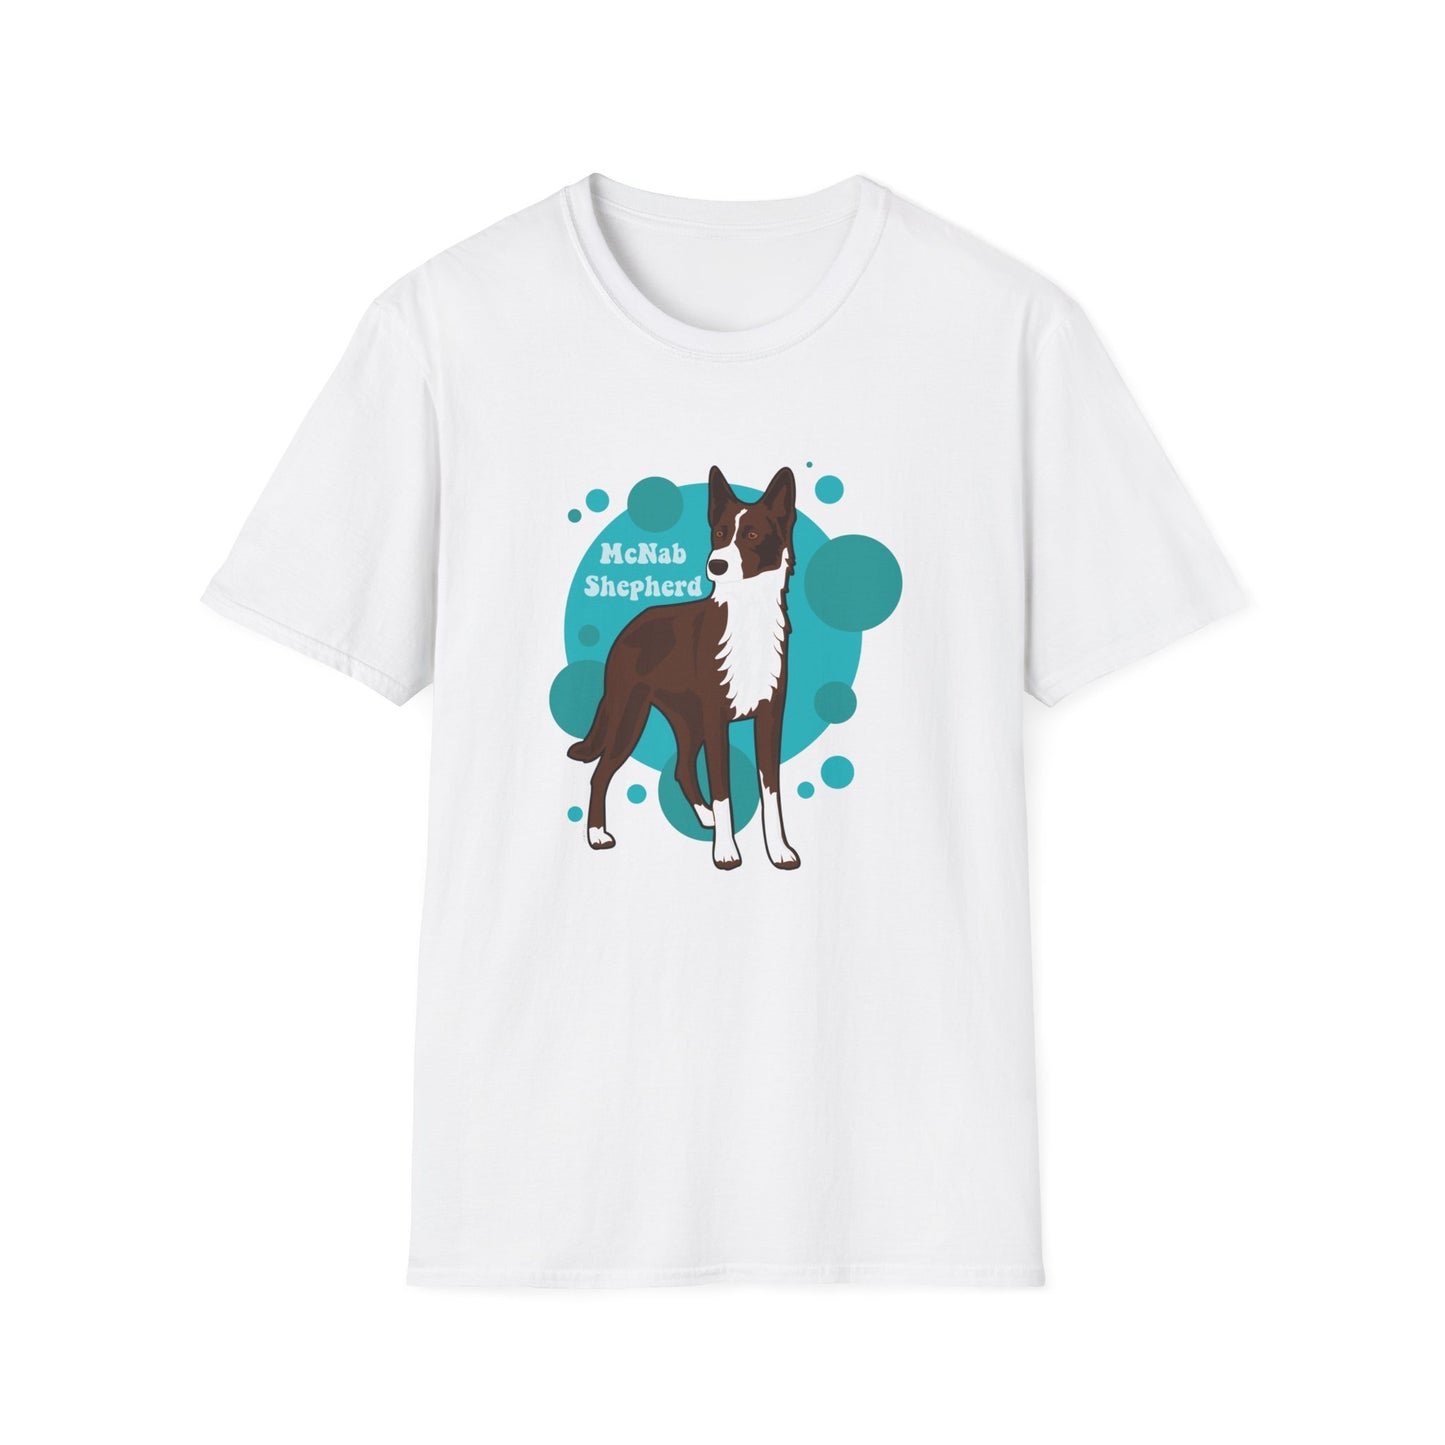 McNAB SHEPHERD Unisex Softstyle T-Shirt